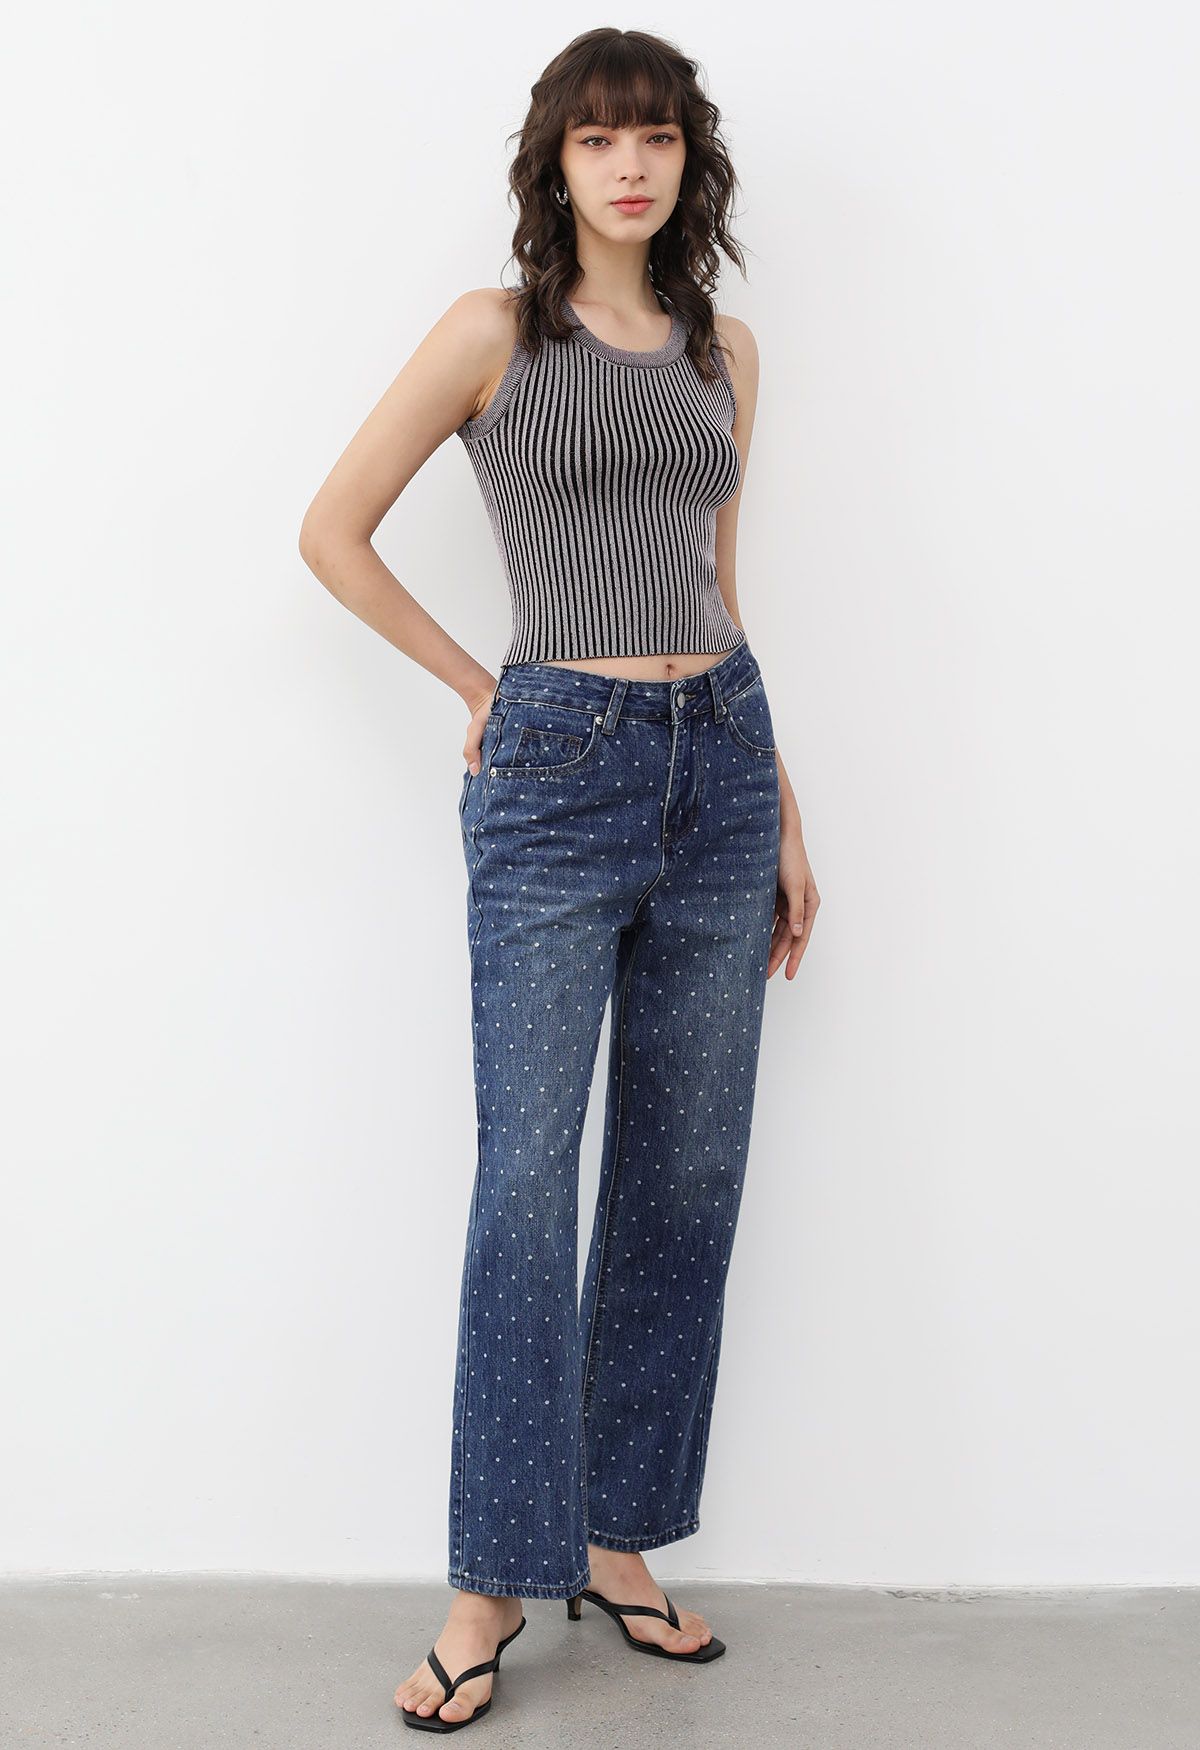 Jeans mit geradem Bein und Polka-Dot-Print